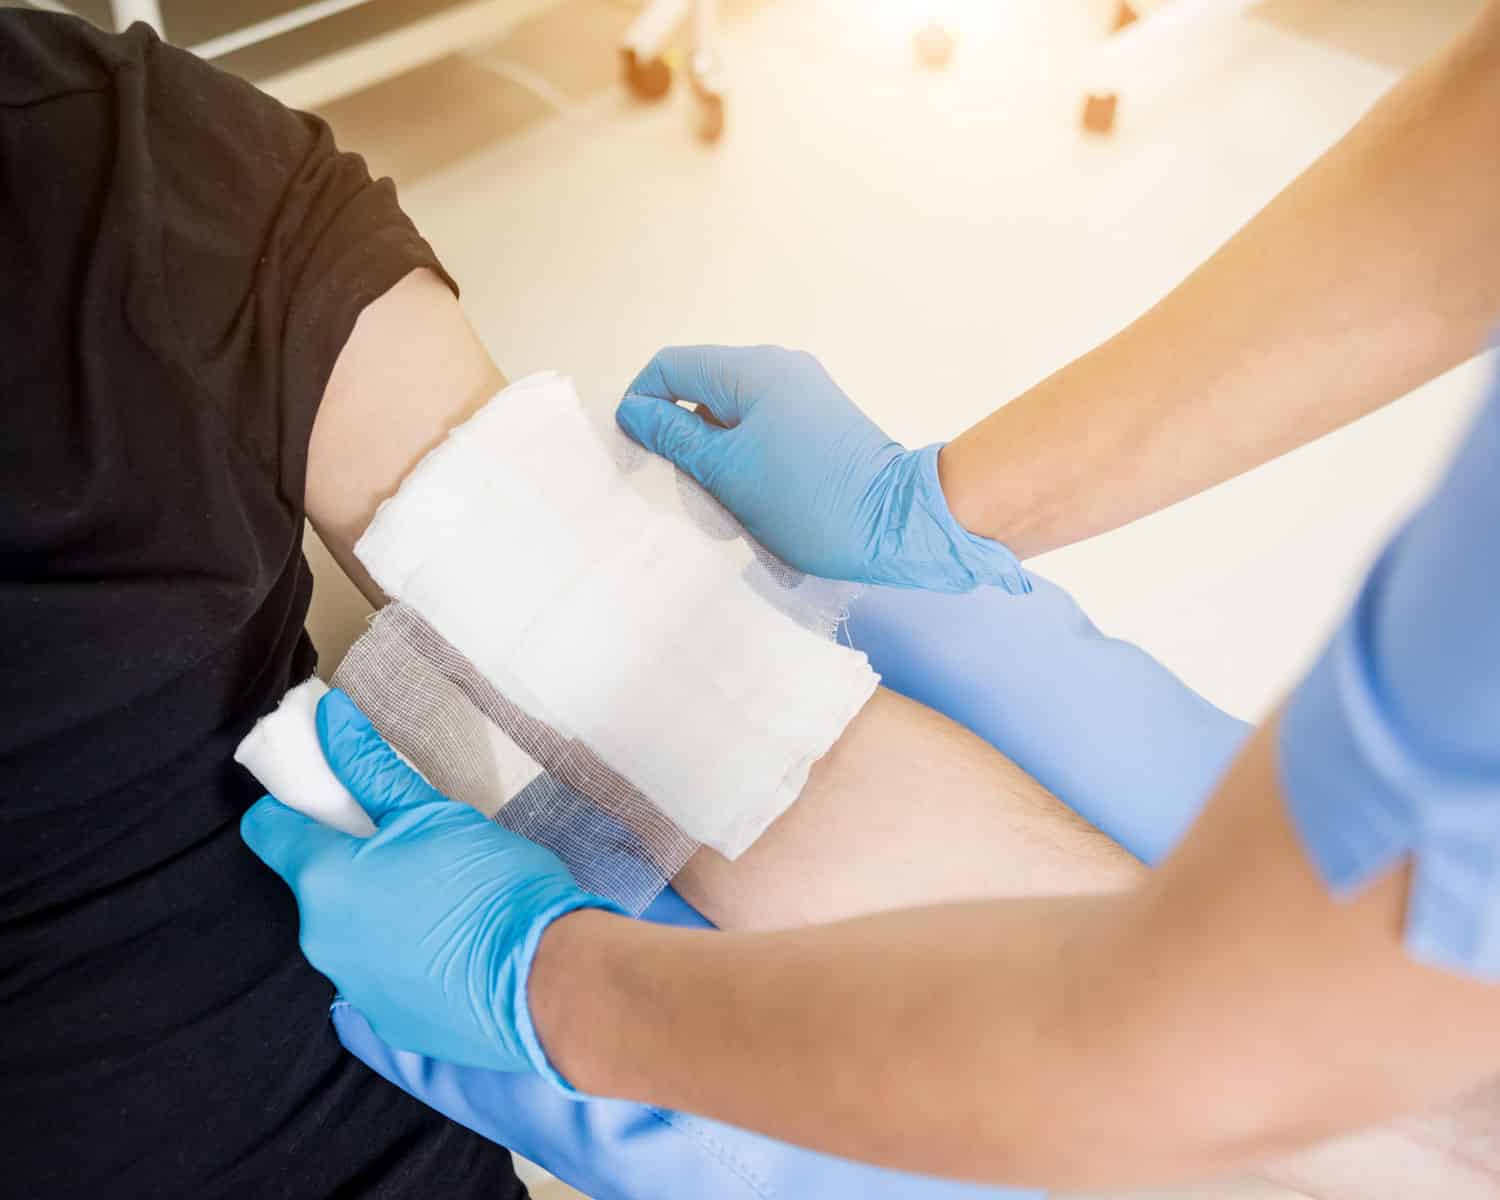 Nurse bandaging up a patient